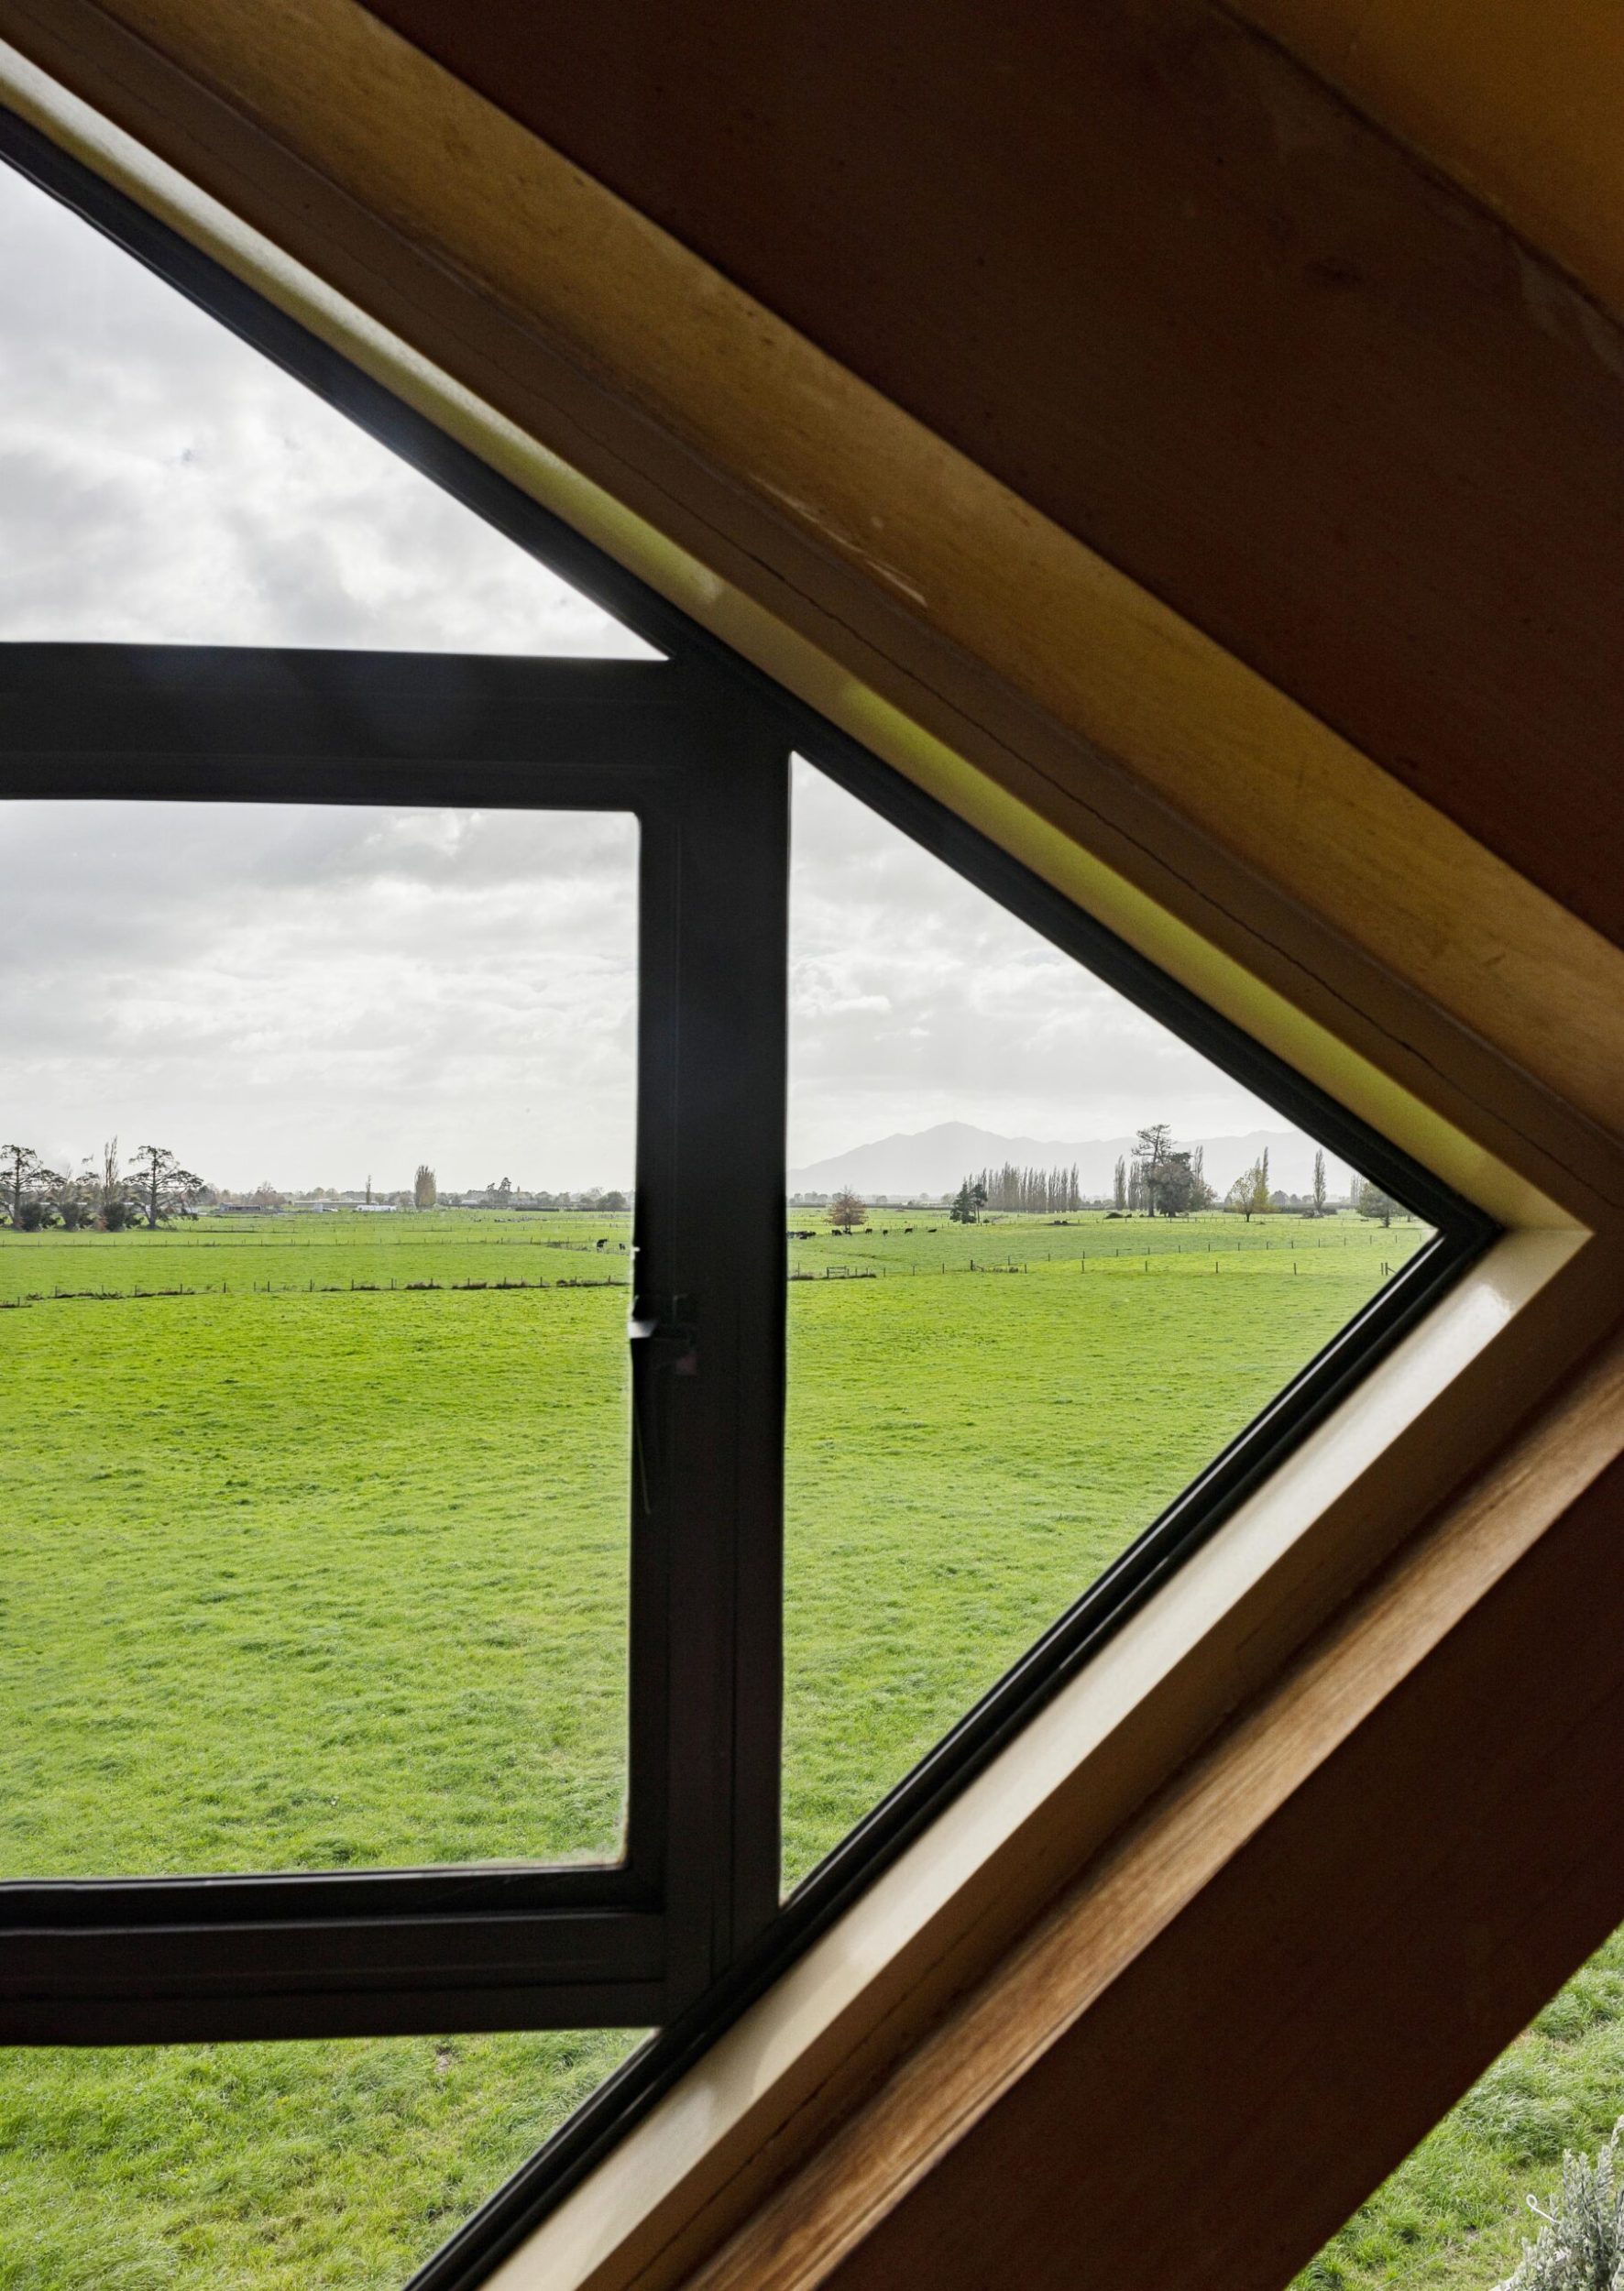 A triangular window facing farmland